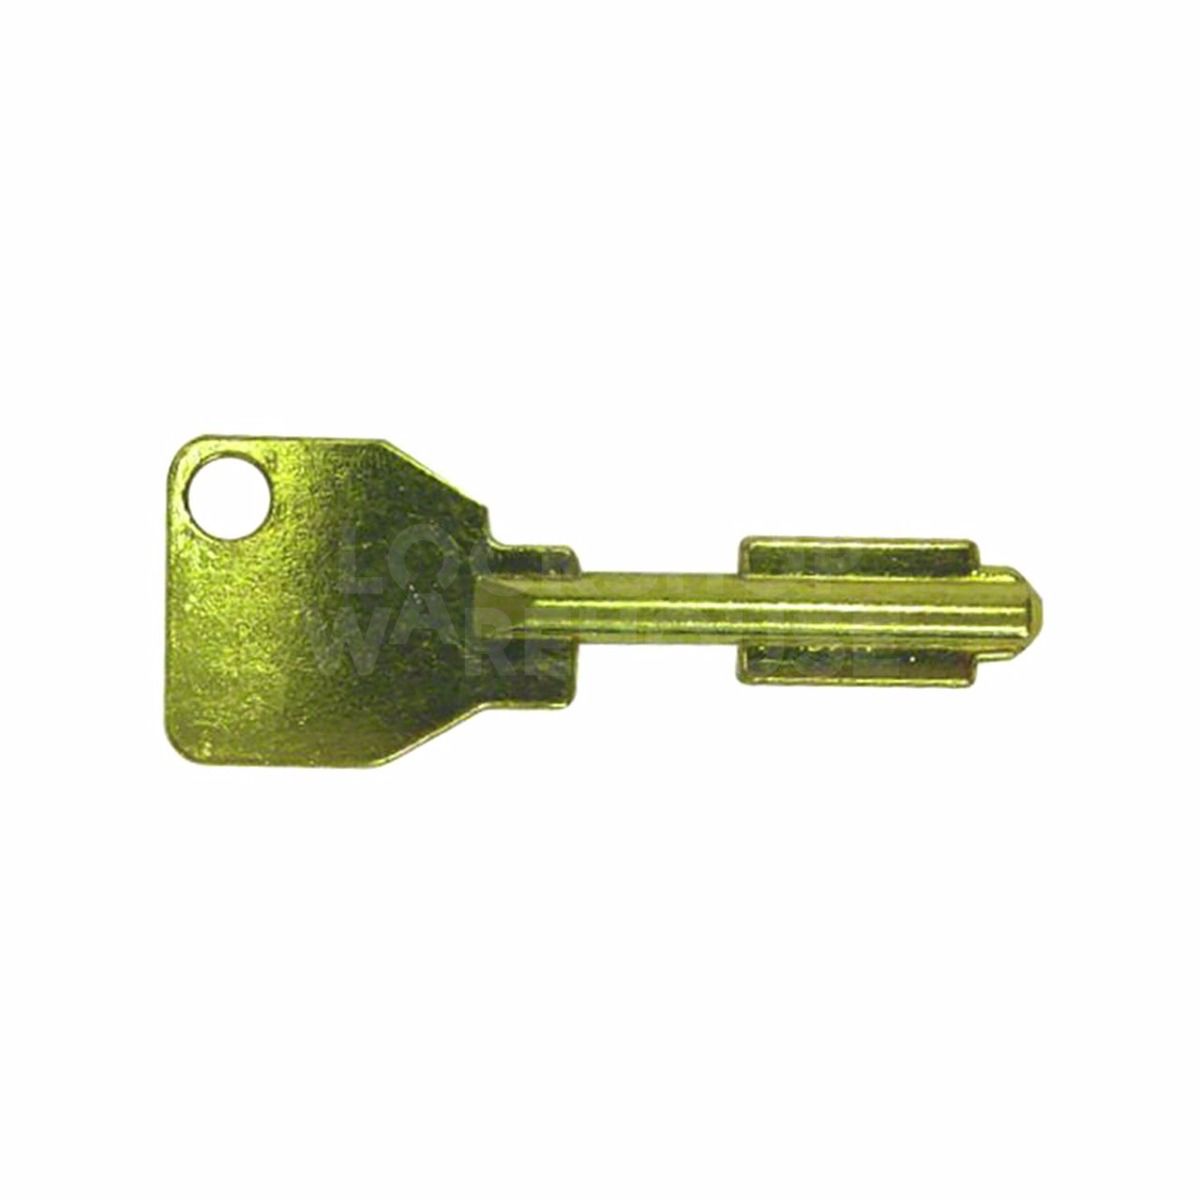 Extra key for Union AVA 1K57 Padlocks